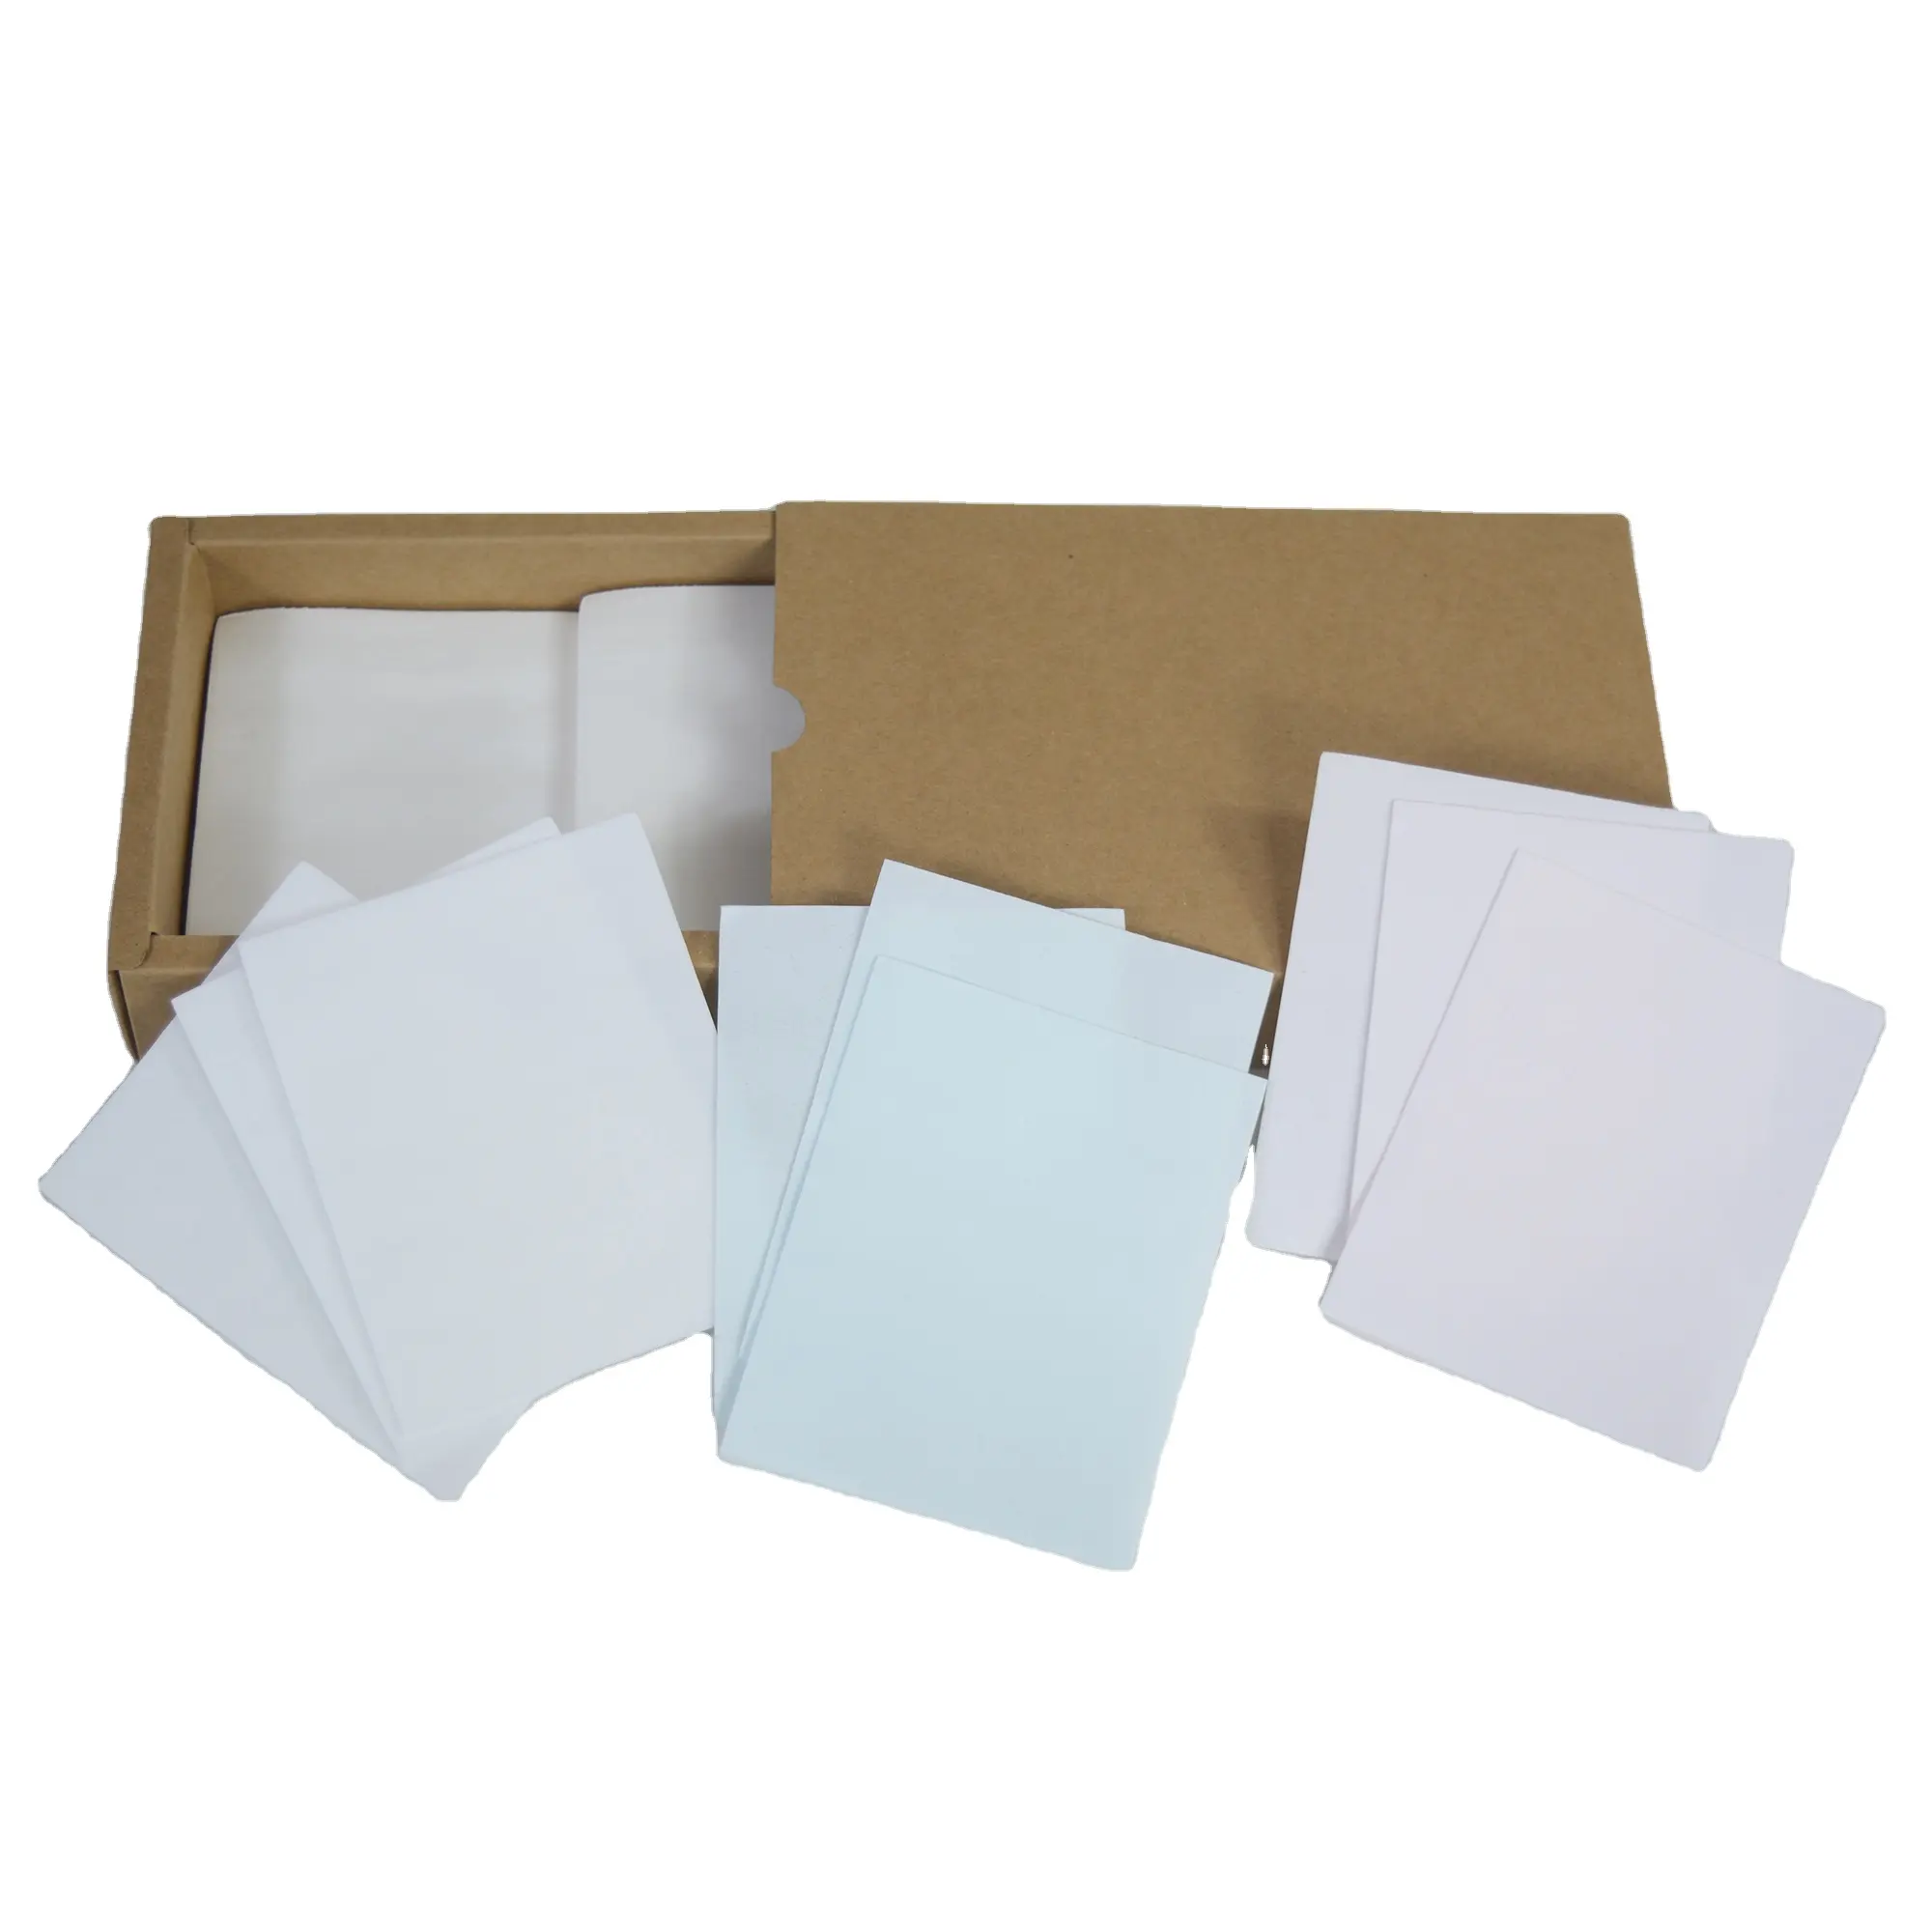 แผ่นกระดาษผงซักฟอกแบบเข้มข้นเป็นมิตรต่อสิ่งแวดล้อมแผ่นกระดาษสำหรับทำความสะอาด